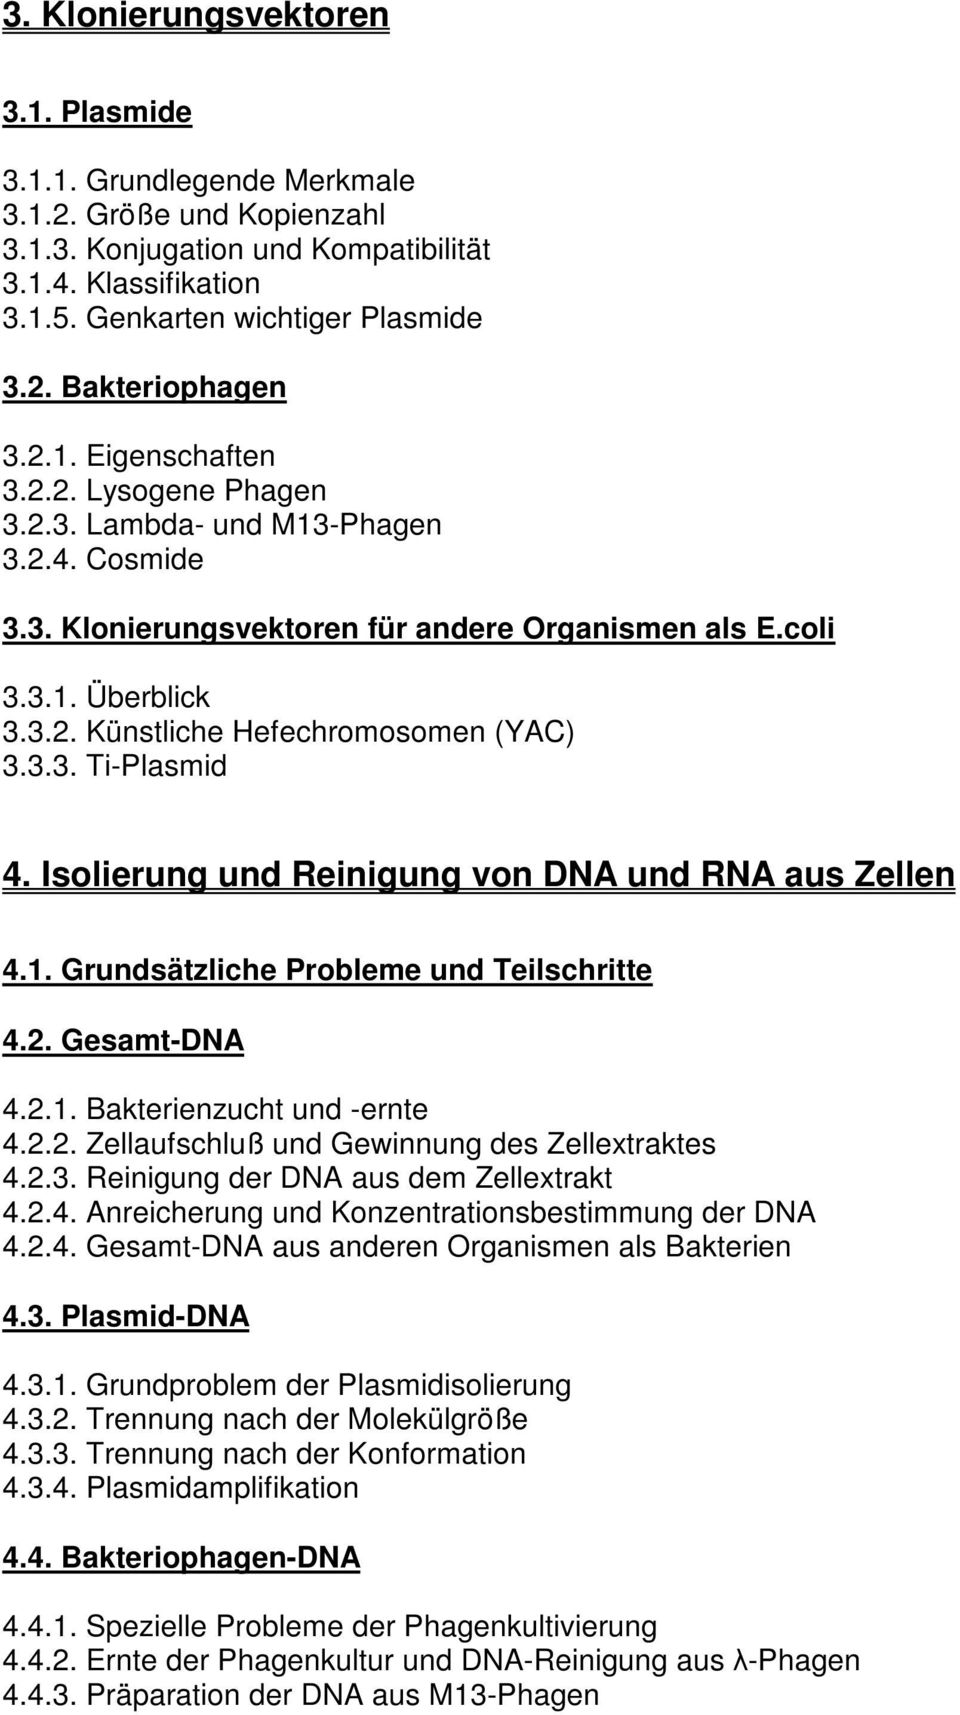 3.3. Ti-Plasmid 4. Isolierung und Reinigung von DNA und RNA aus Zellen 4.1. Grundsätzliche Probleme und Teilschritte 4.2. Gesamt-DNA 4.2.1. Bakterienzucht und -ernte 4.2.2. Zellaufschluß und Gewinnung des Zellextraktes 4.